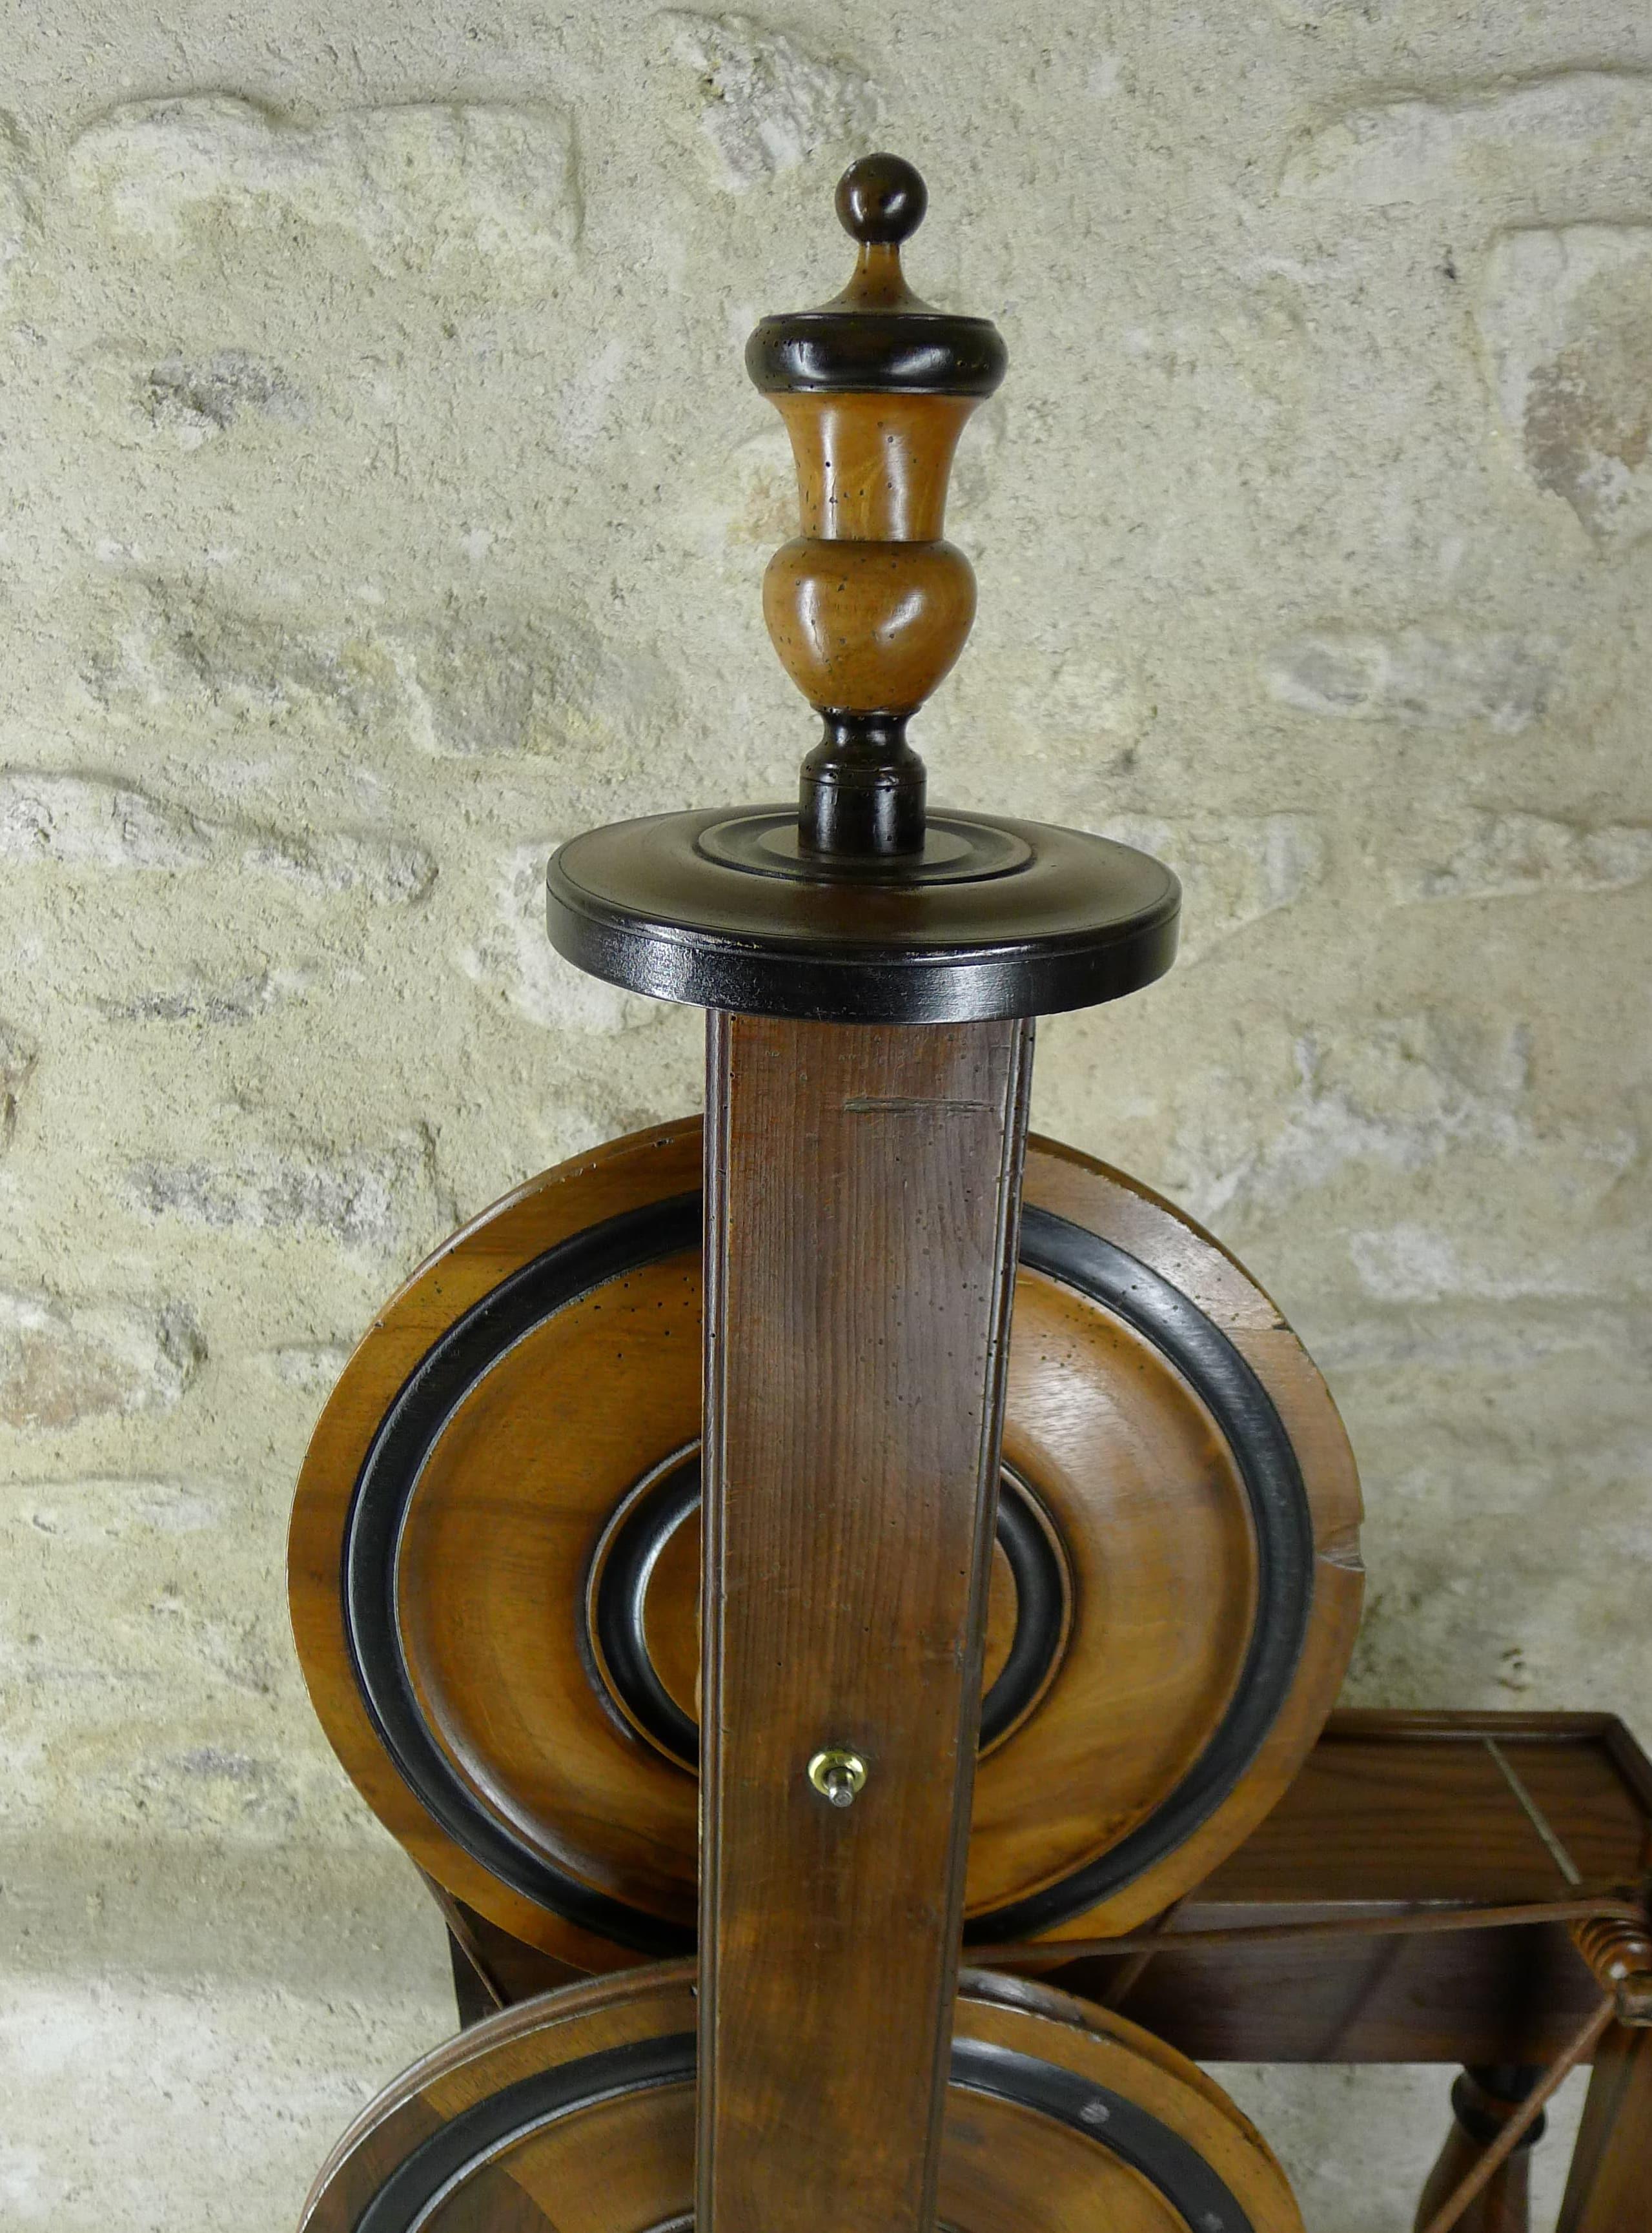 Silk Spinning Wheel, 18th Century (Französisch)